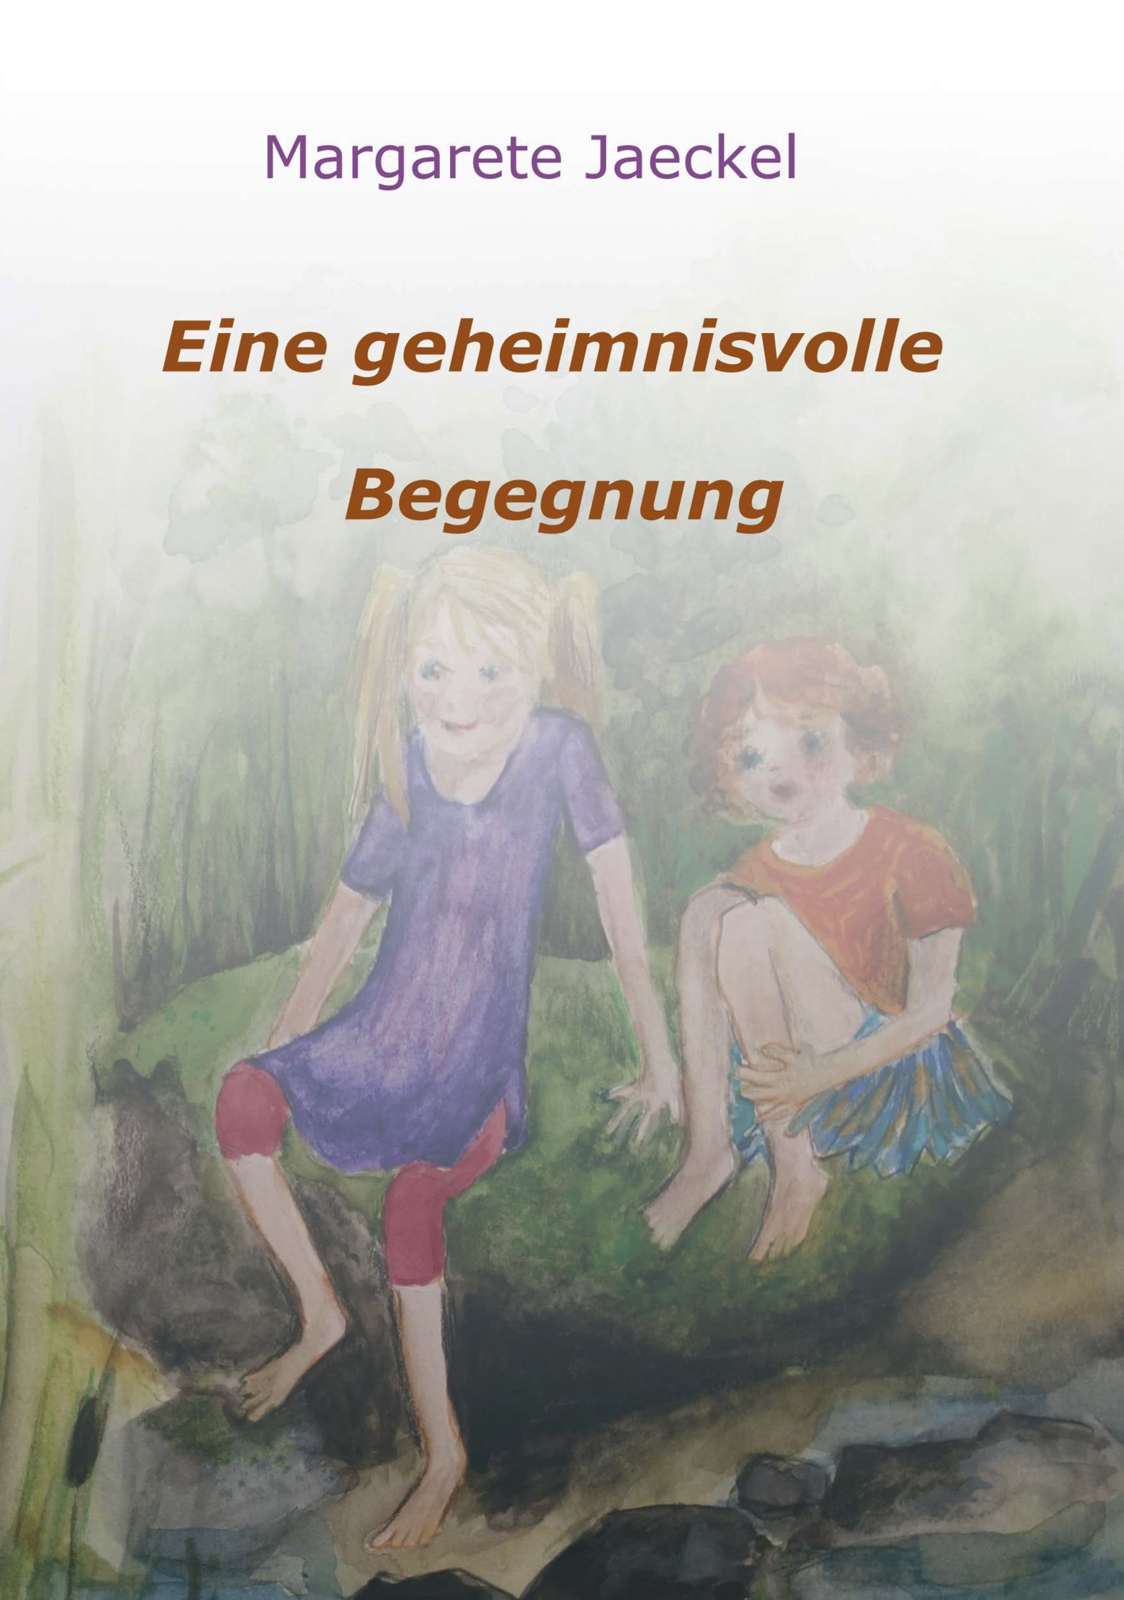 Eine geheimnisvolle Begegnung | Sinnige Geschichten Margarete Jaeckel | Illustrationen: S. Ledendecker